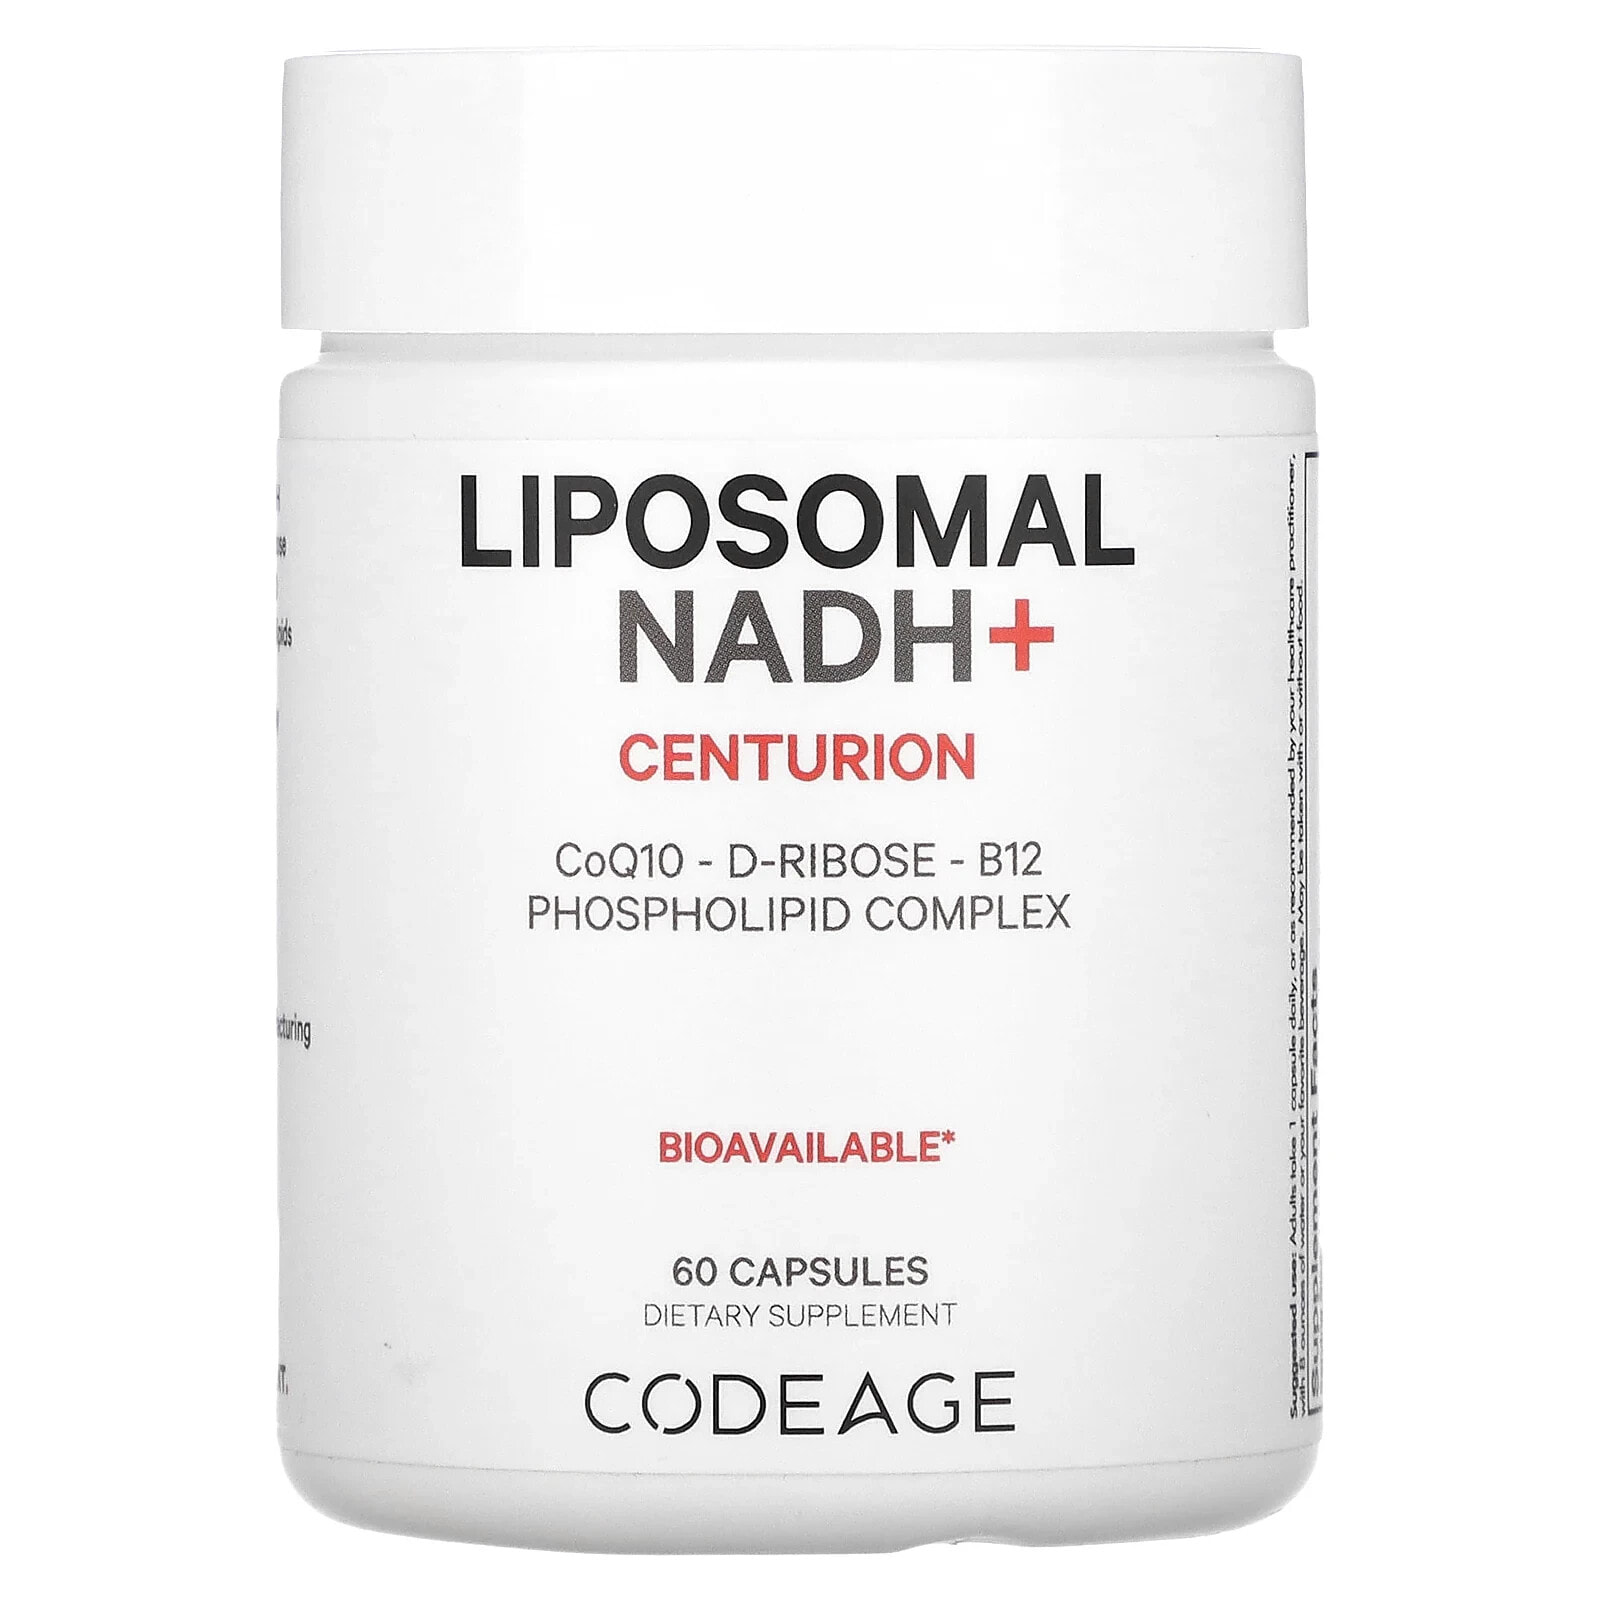 Liposomal NADH+, Centurion, 60 Capsules